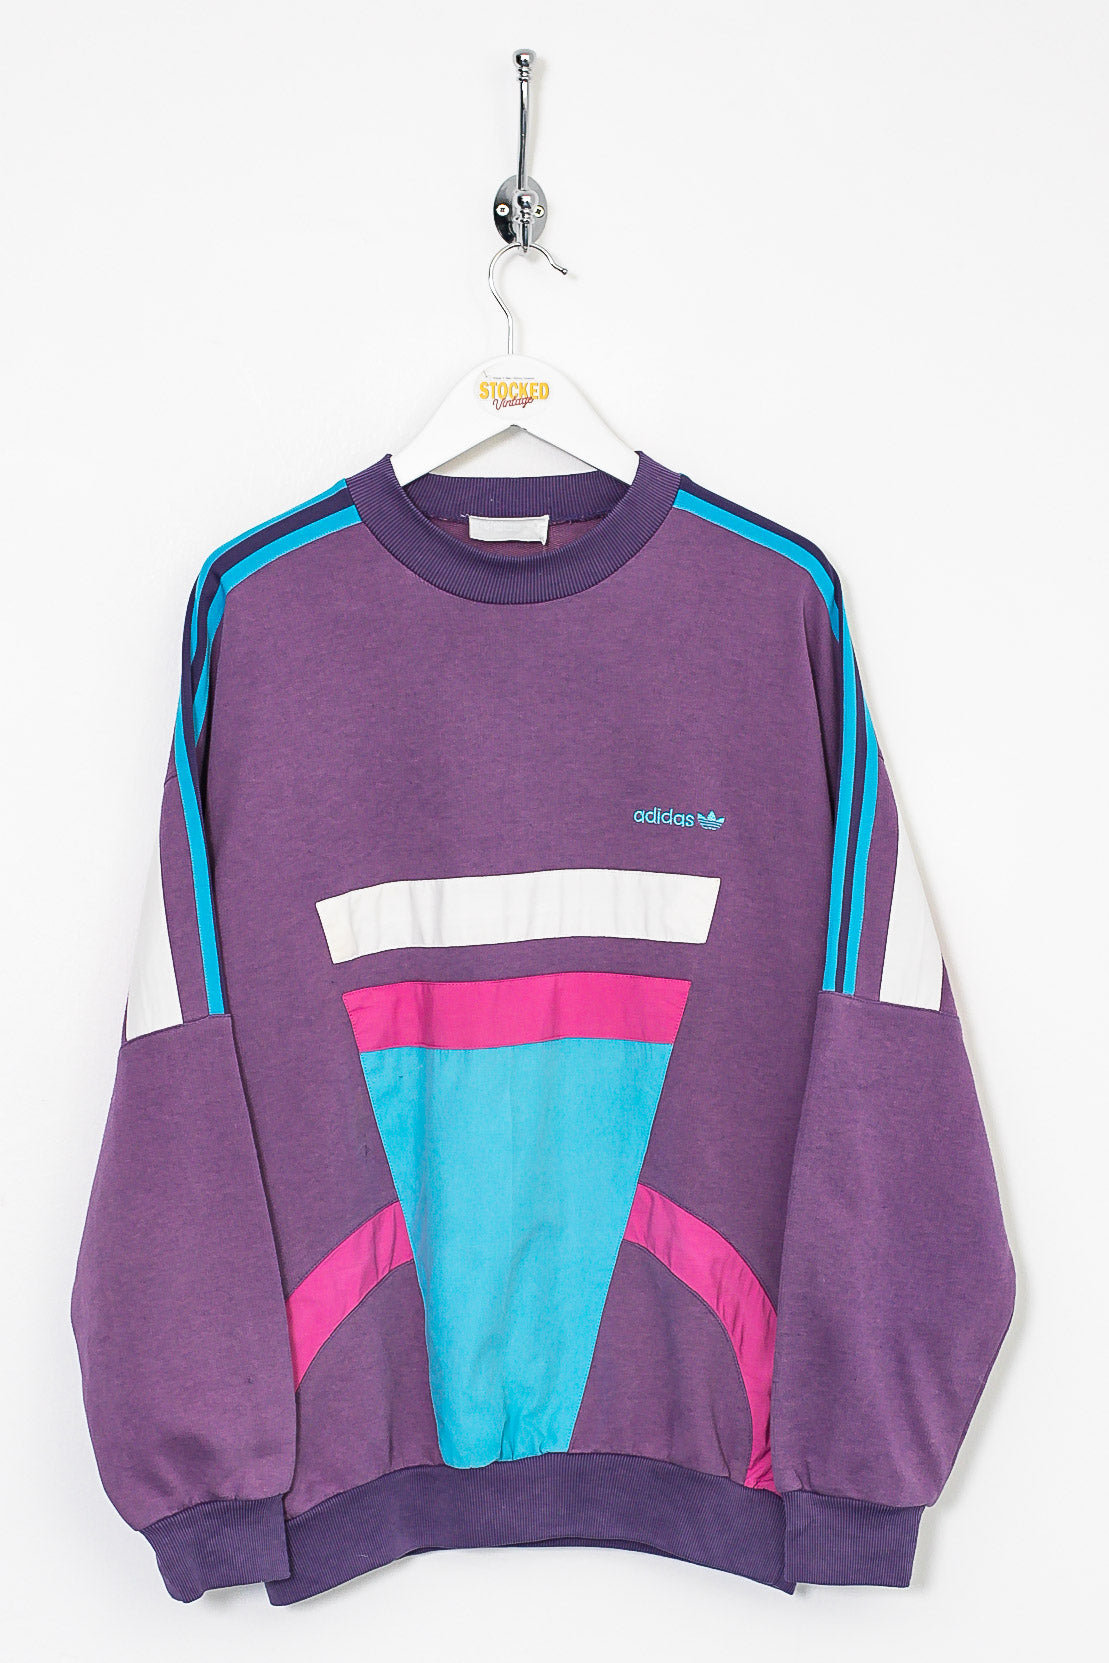 90s Adidas Sweatshirt (S) – Stocked Vintage